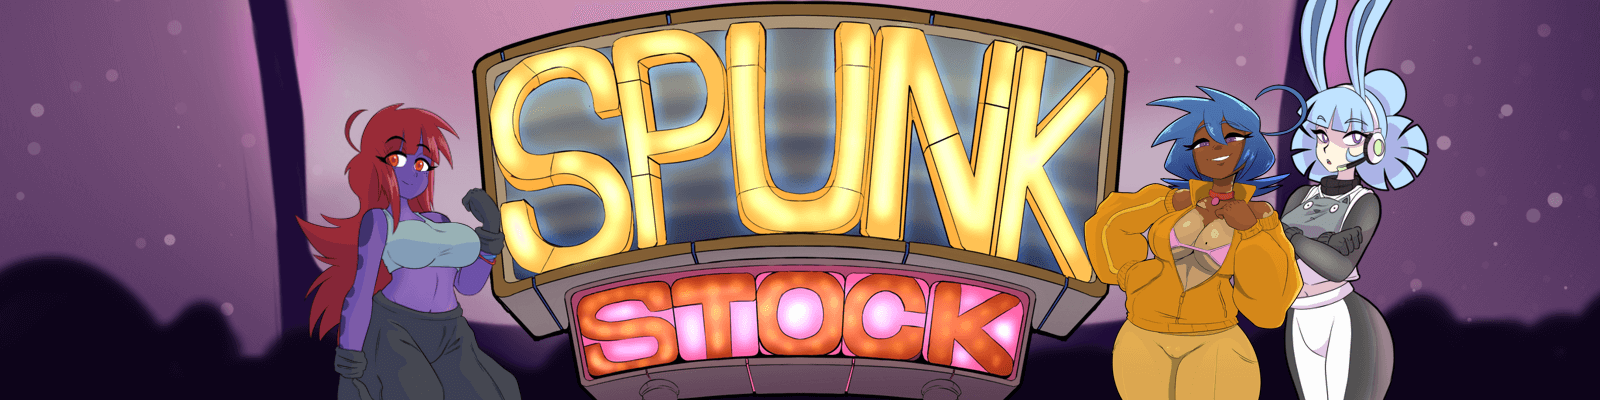 SpunkStock: Music Festival poster